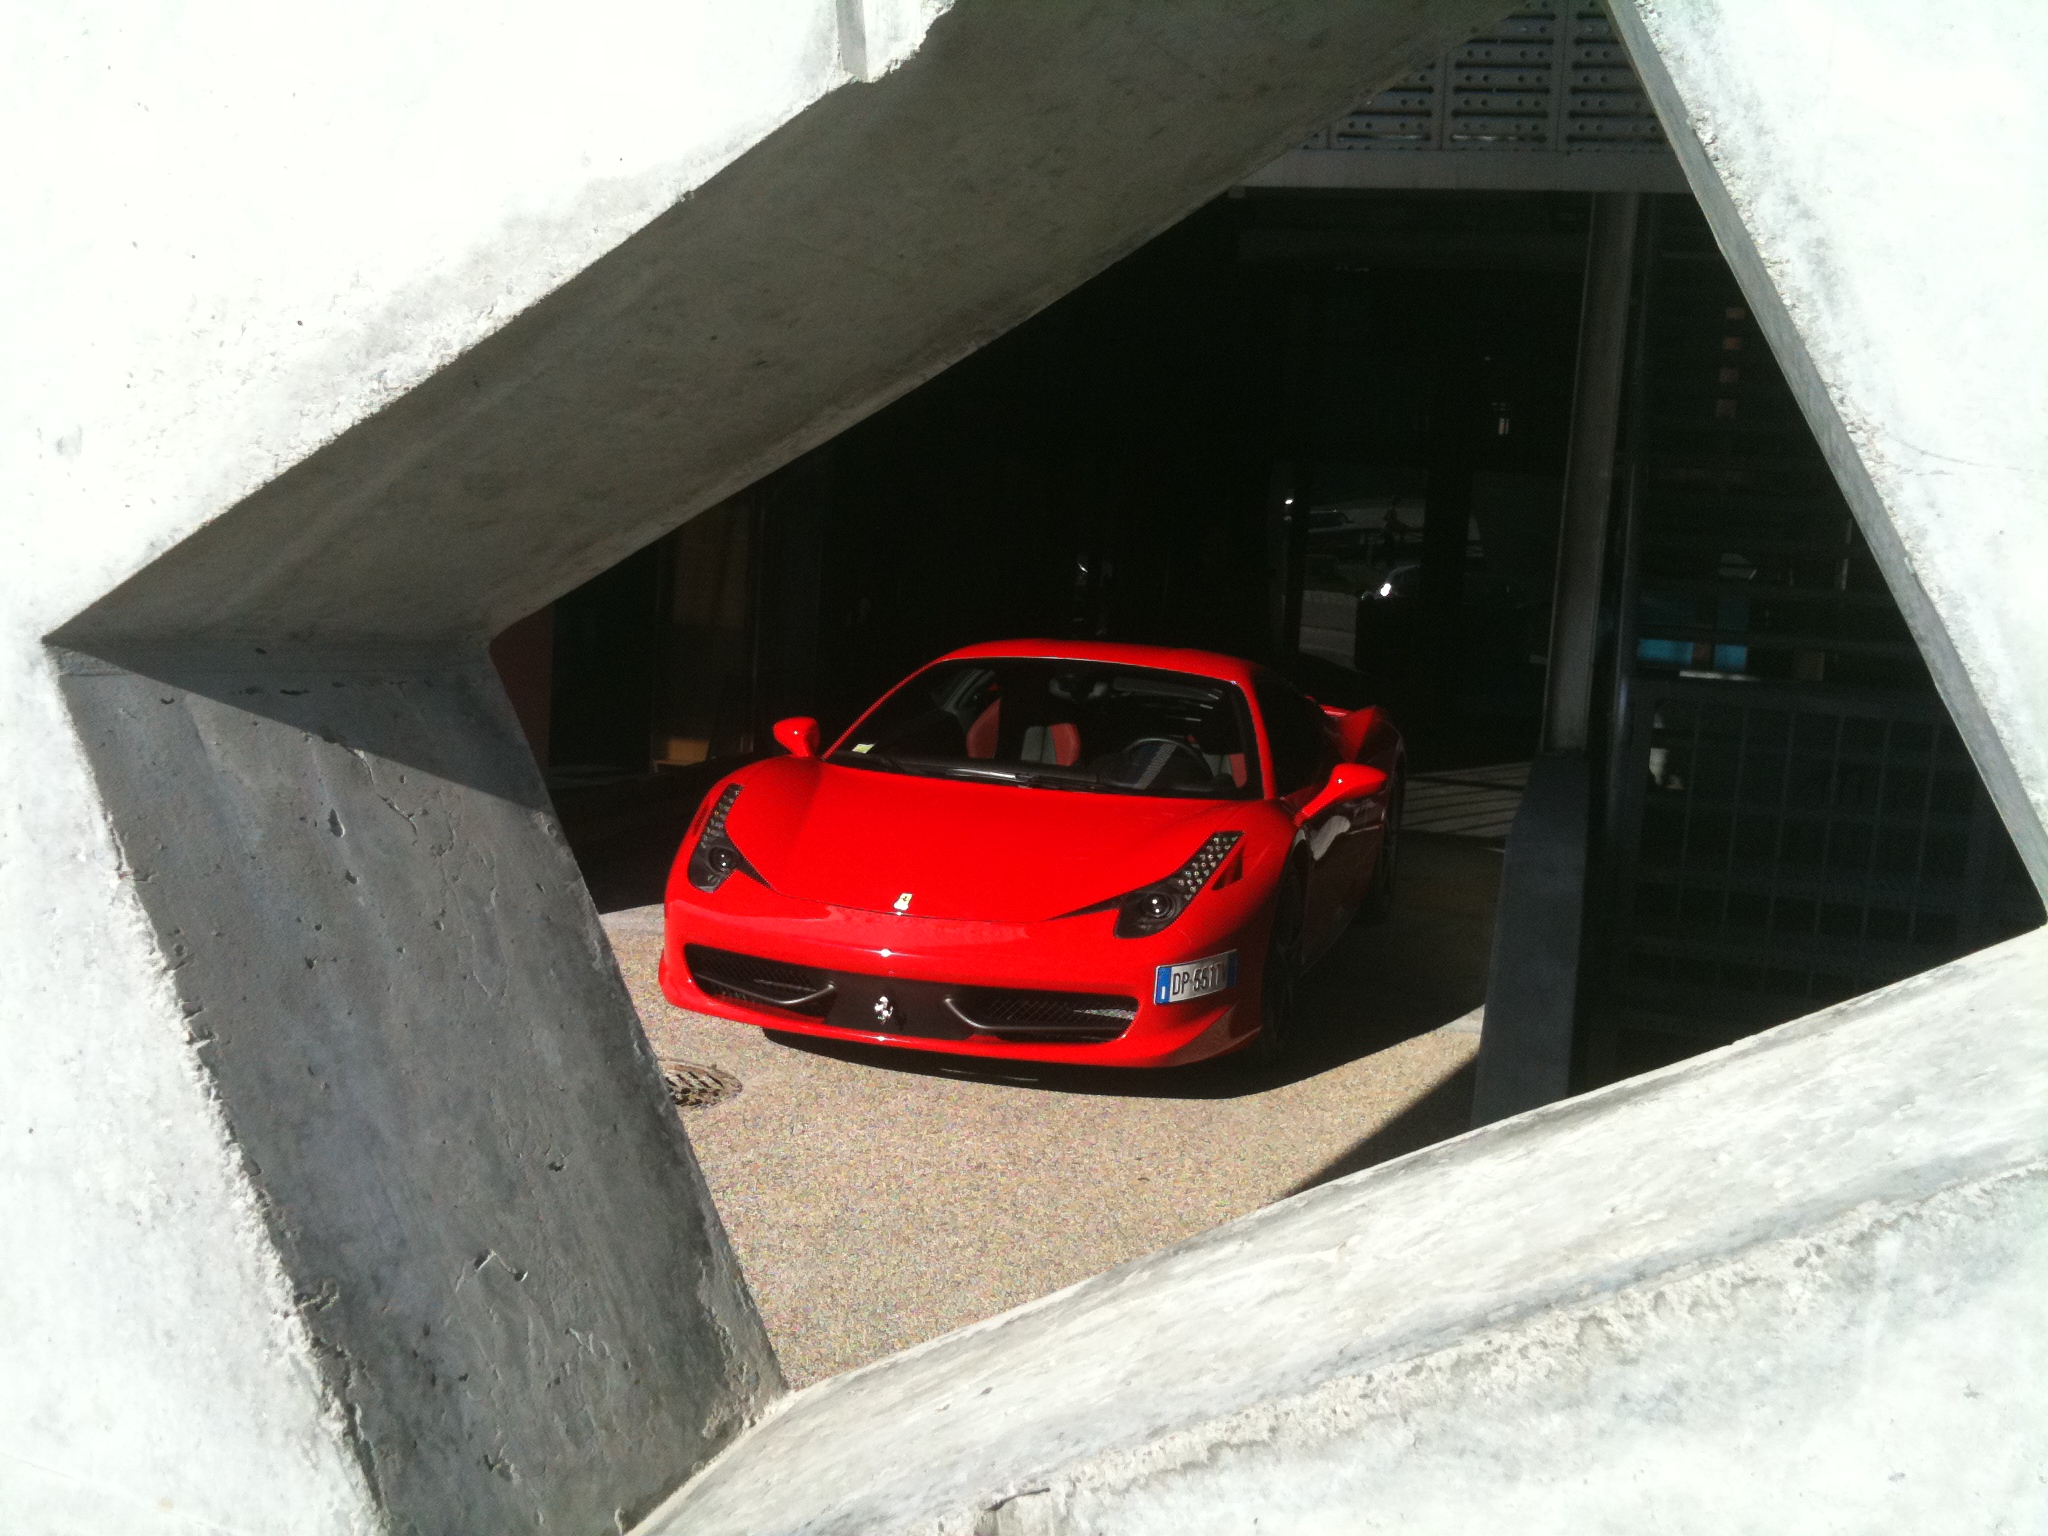 Феррари, Ferrari 458 Italia, 458 Italia - обои на рабочий стол